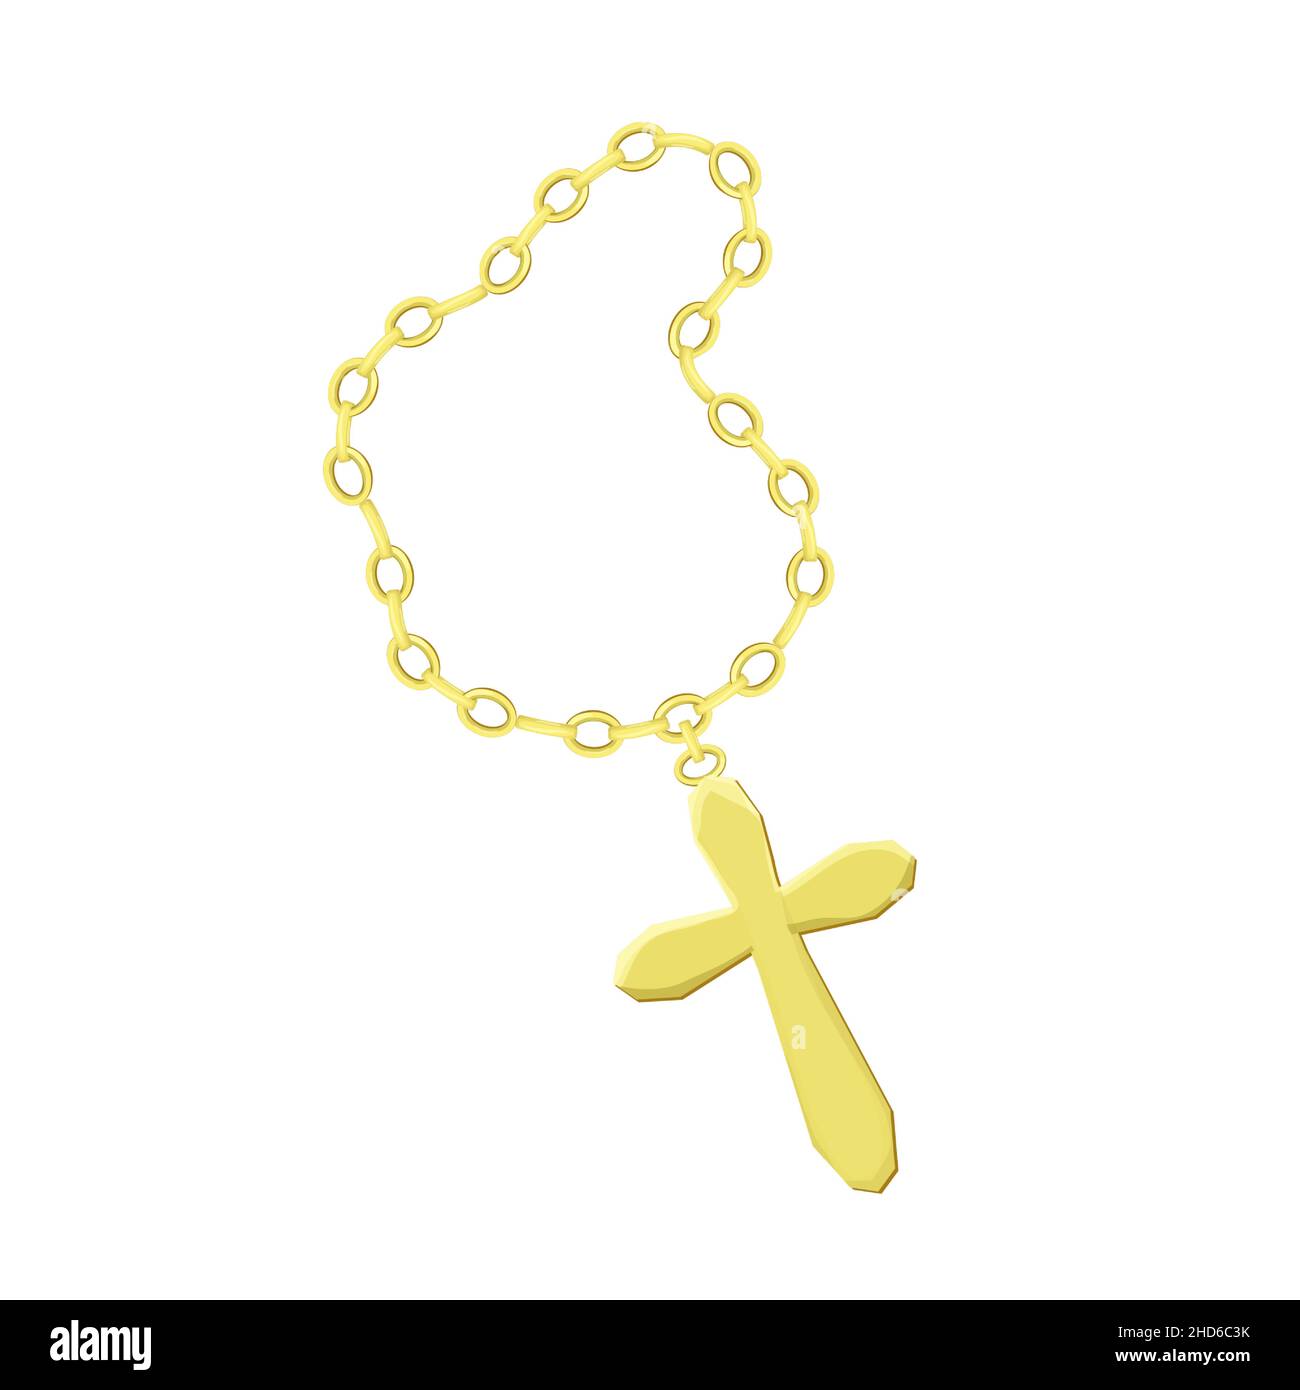 Goldenes Kreuz mit Kette im Cartoon-Stil isoliert auf weißem Hintergrund. Halskette religiösen Schmuck, hängende Accessoires. Vektorgrafik Stock Vektor